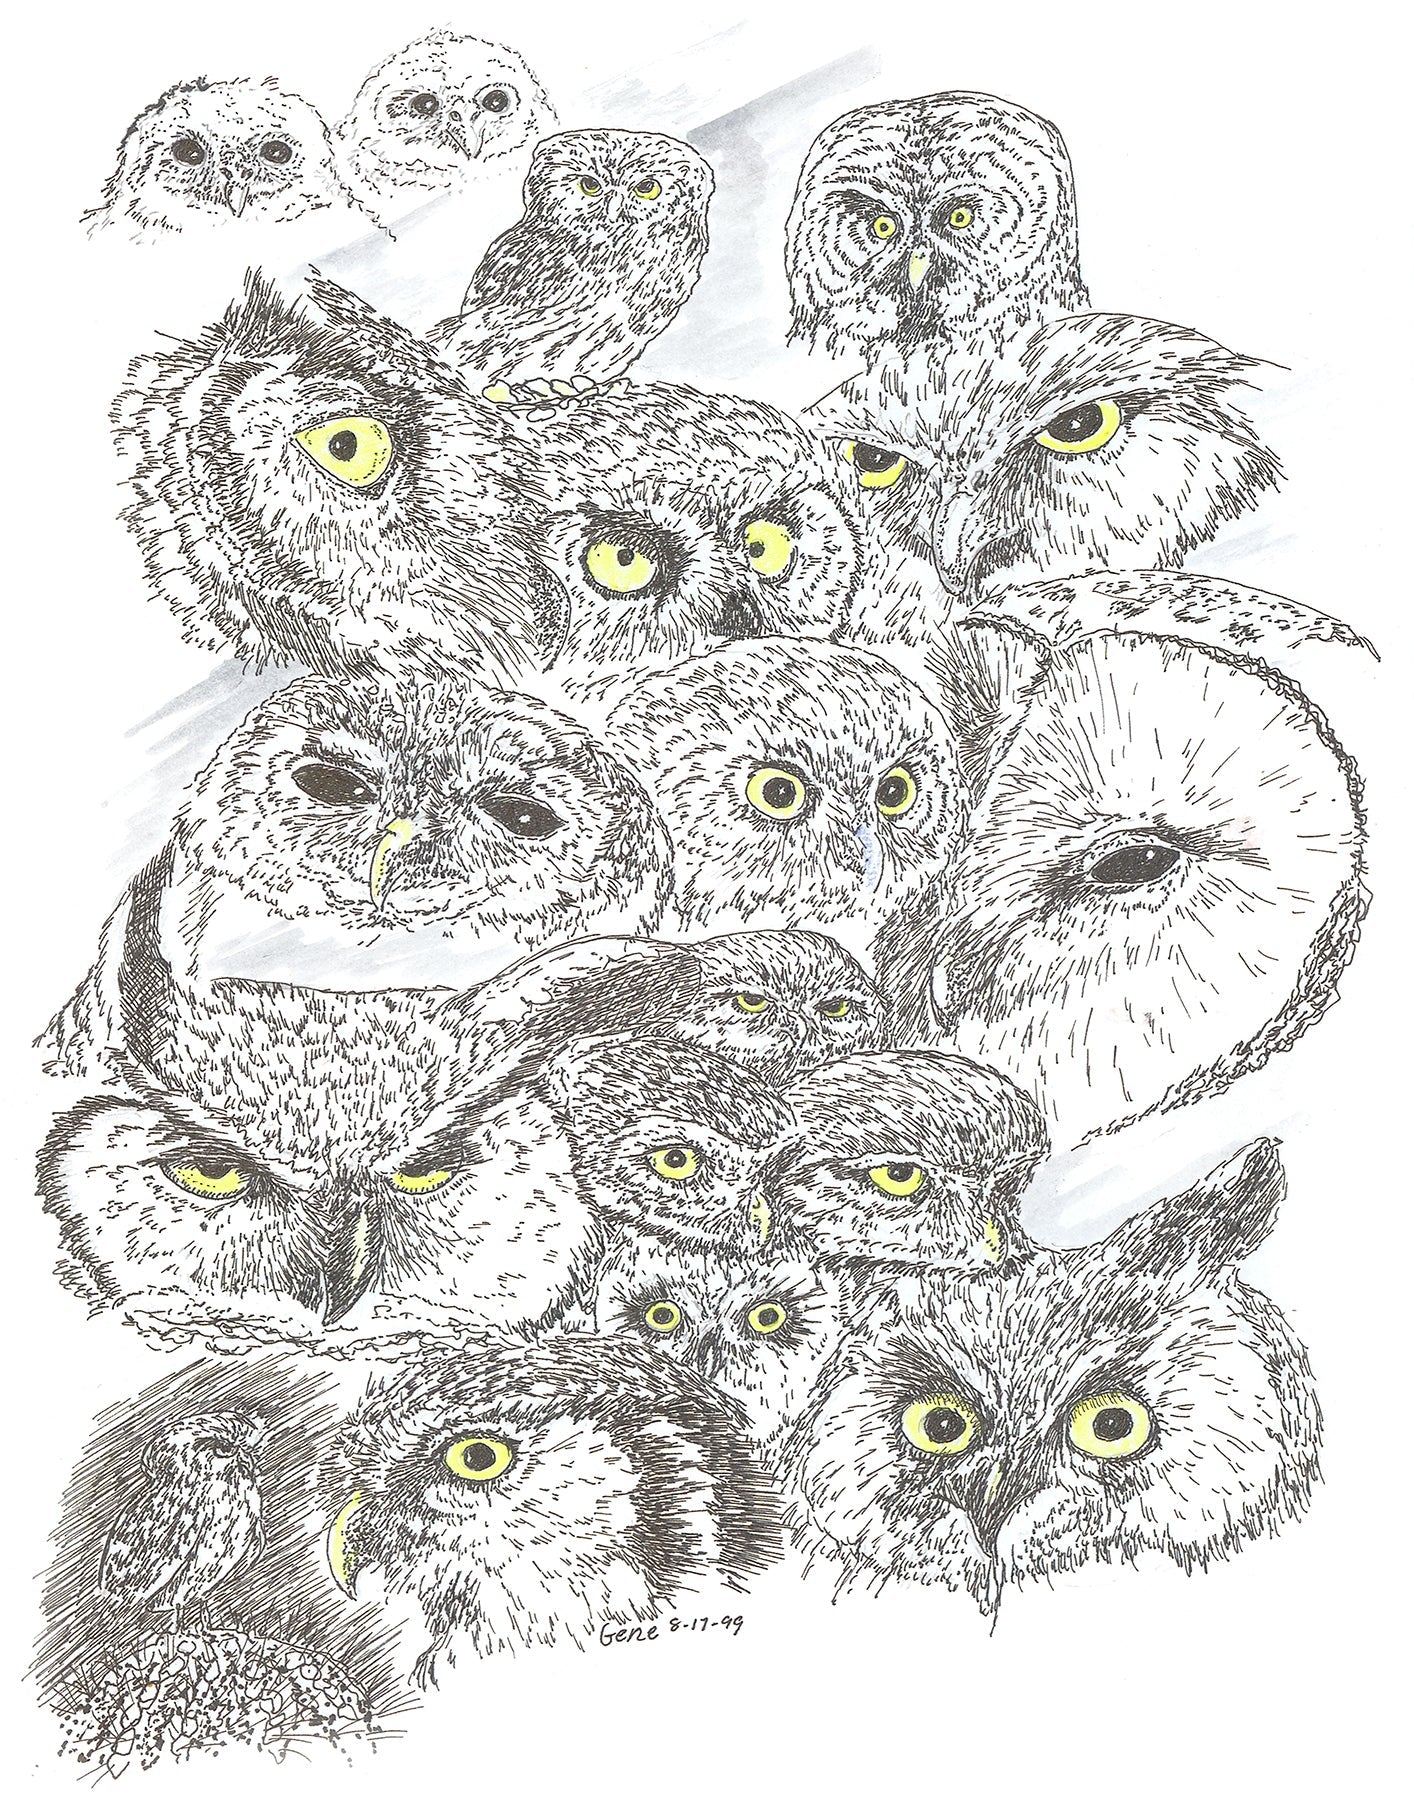 Owls Heads Collage Framed - Gene's Pen & Ink